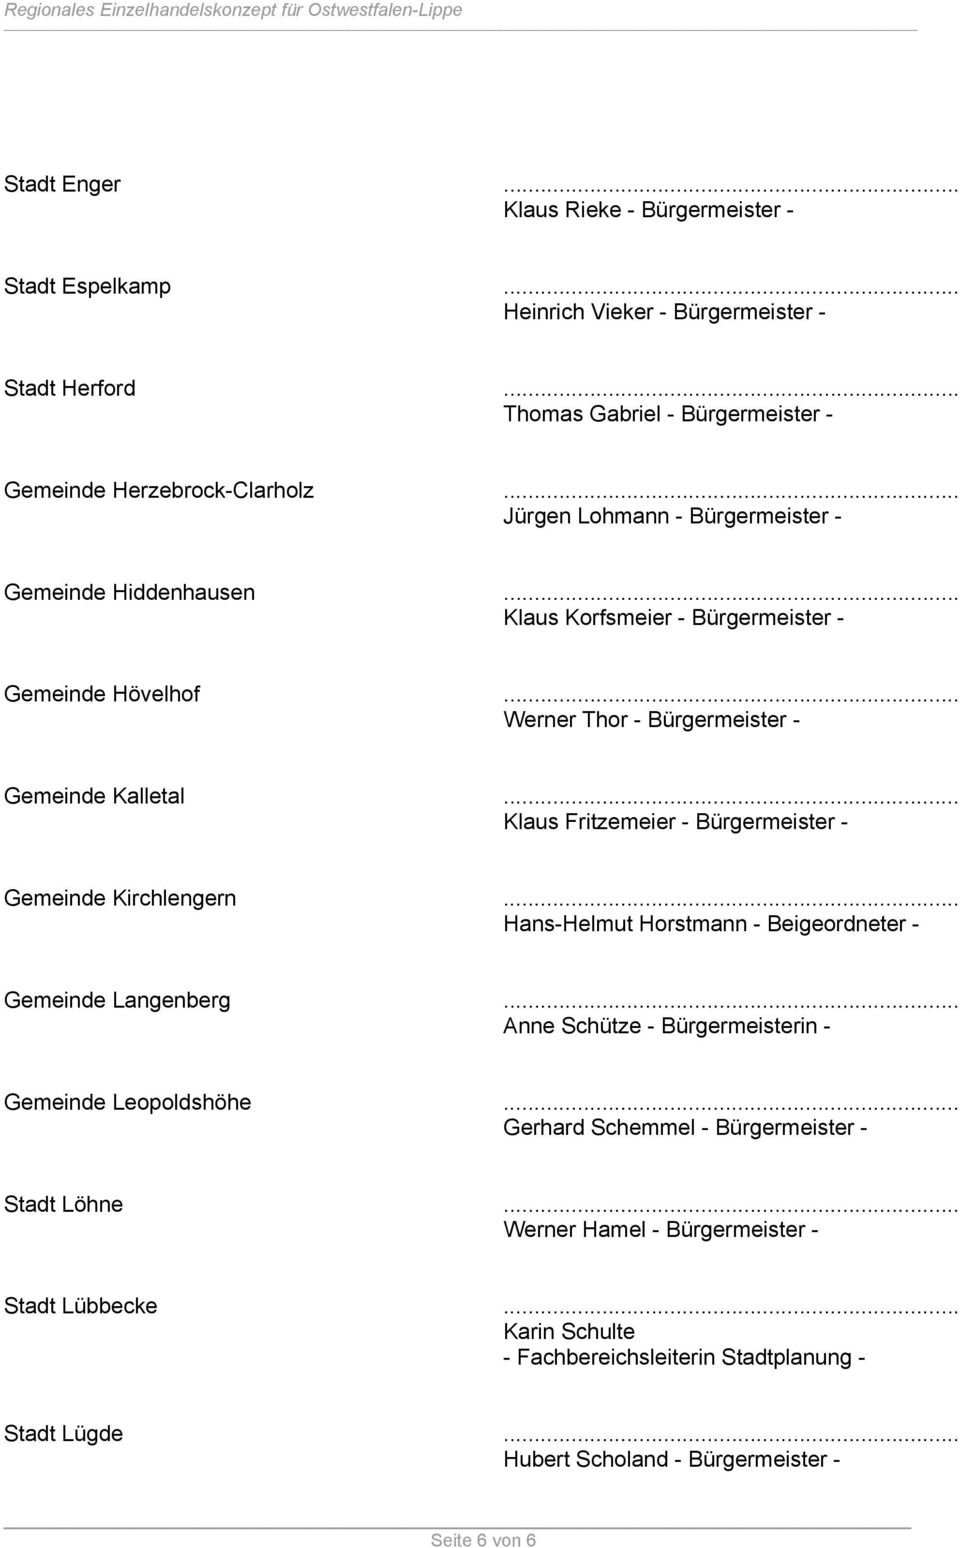 .. Klaus Fritzemeier - Bürgermeister - Gemeinde Kirchlengern... Hans-Helmut Horstmann - Beigeordneter - Gemeinde Langenberg... Anne Schütze - Bürgermeisterin - Gemeinde Leopoldshöhe.